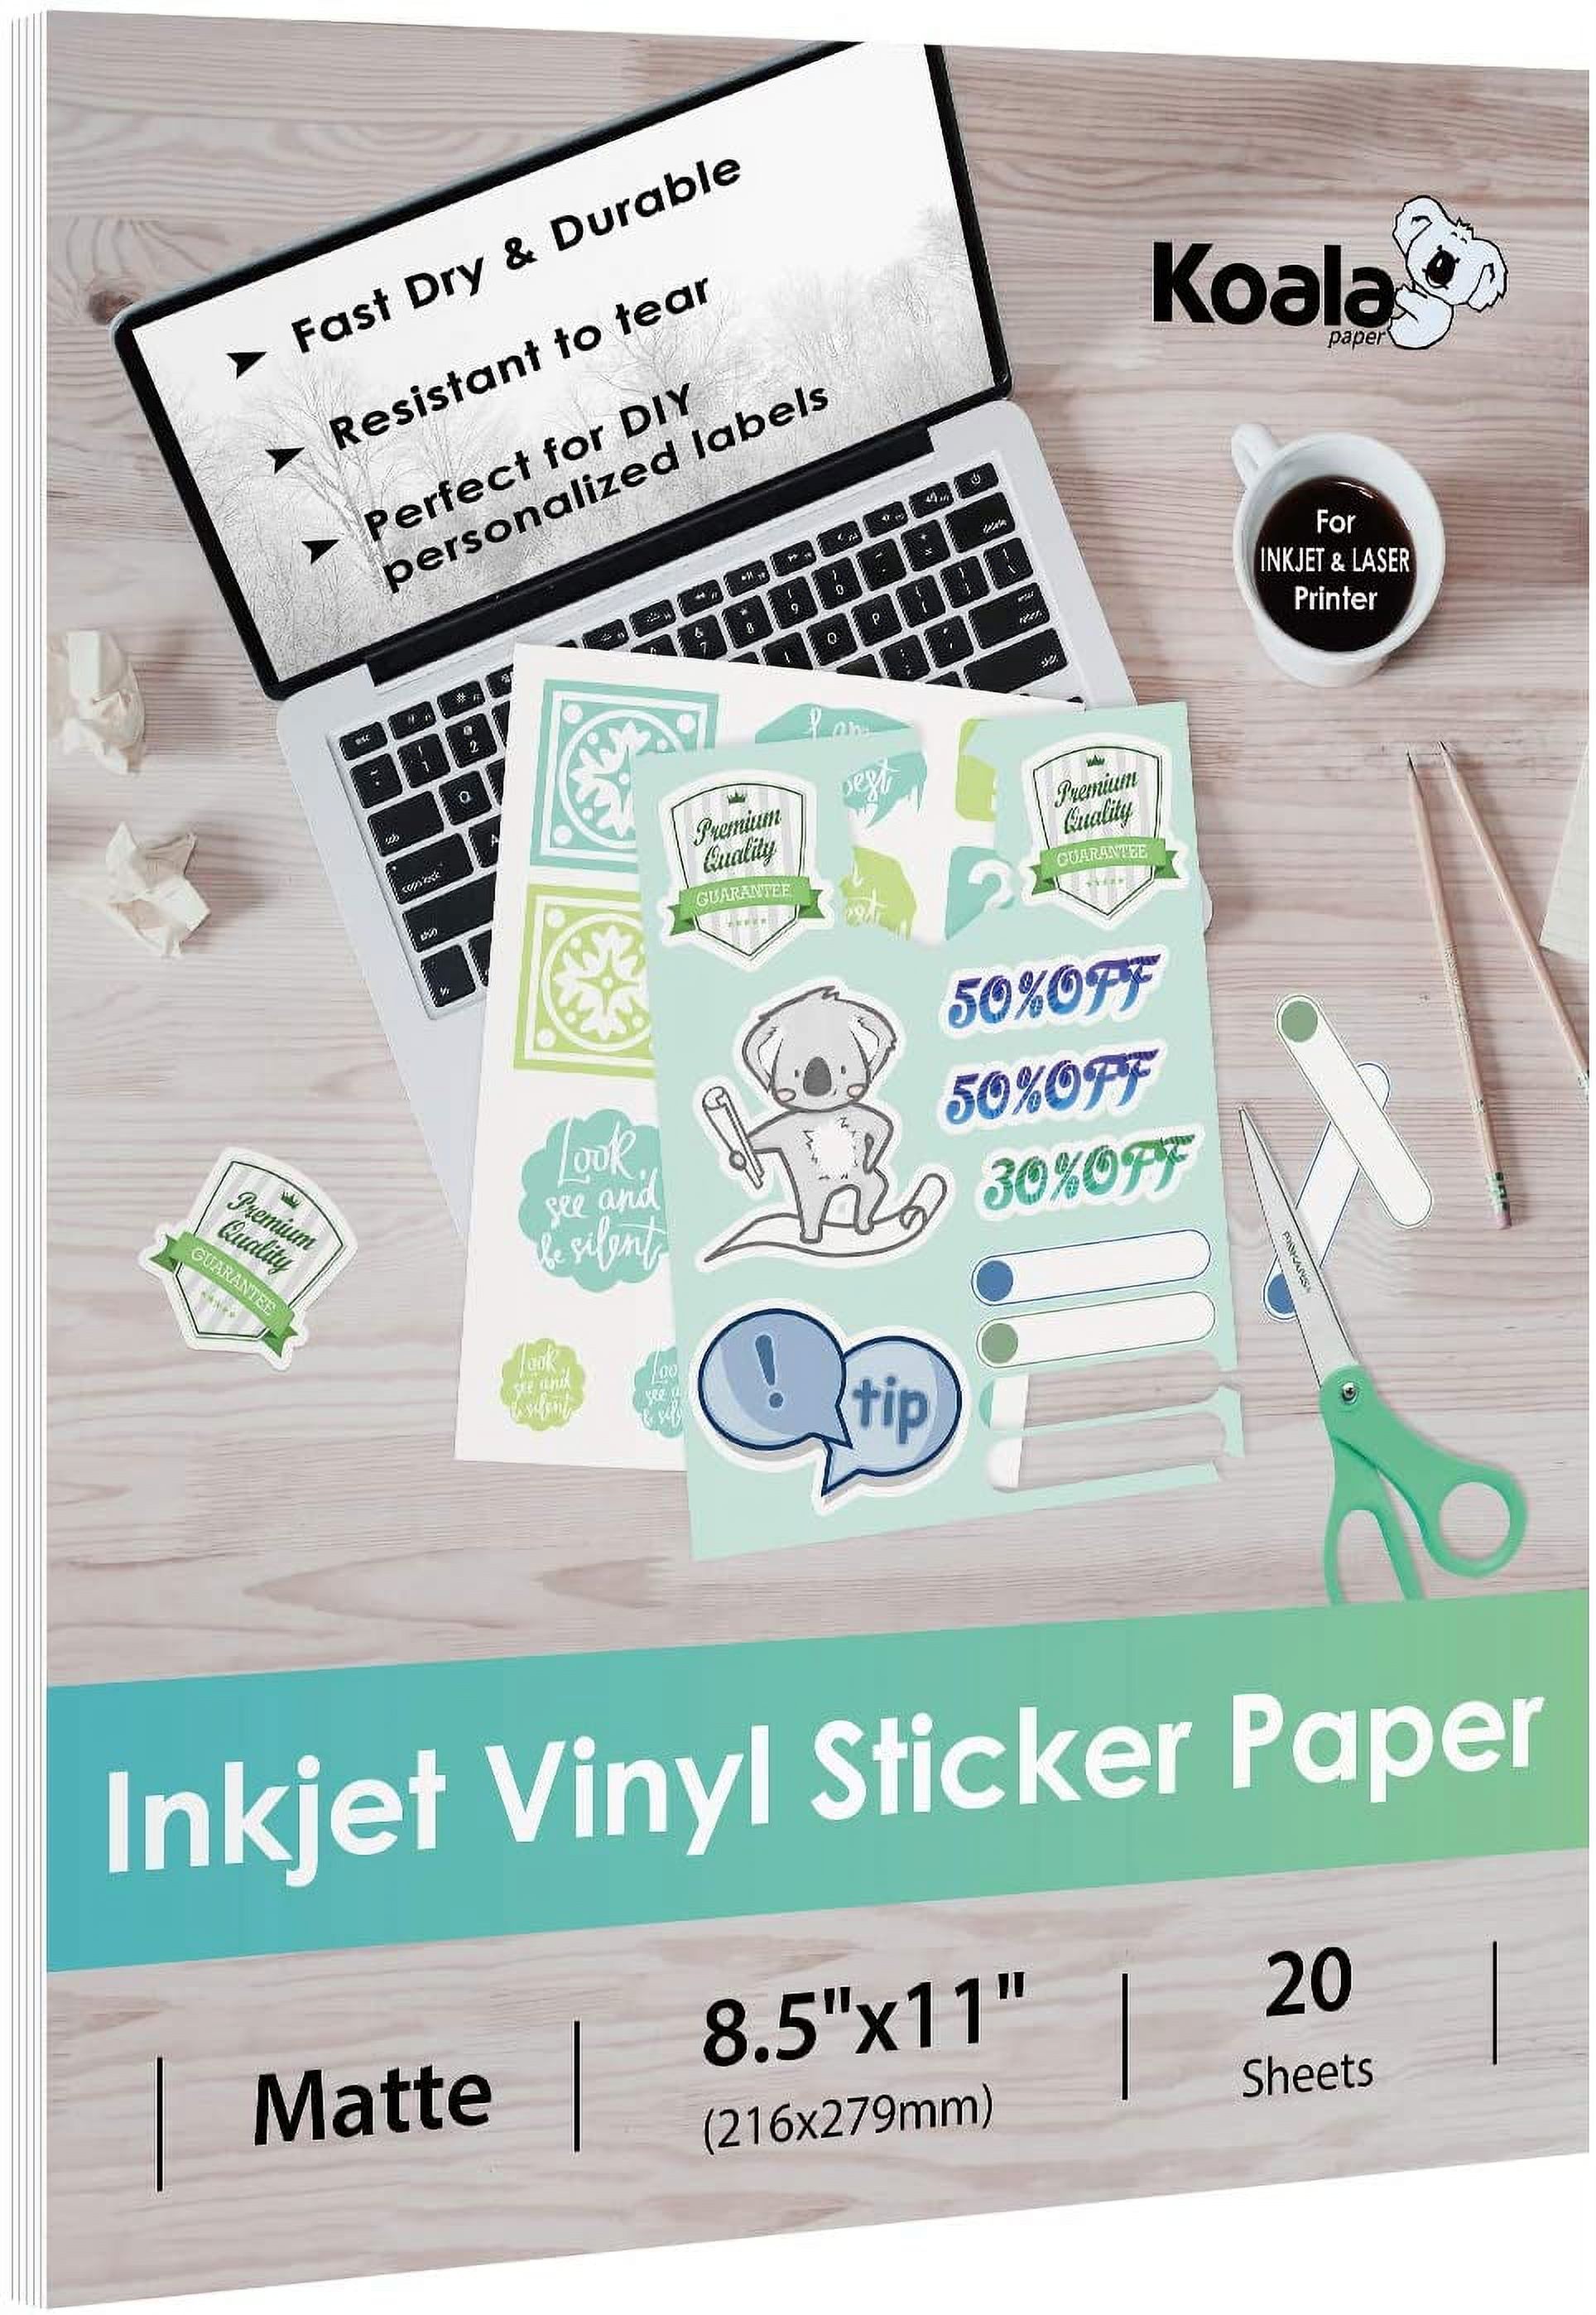 Koala Printable Vinyl Sticker Paper 8.5x11 Inches Waterproof Matte White  Full Sheet Label for Inkjet Printer 20 Sheets, Repositionable Sticker Sheets  